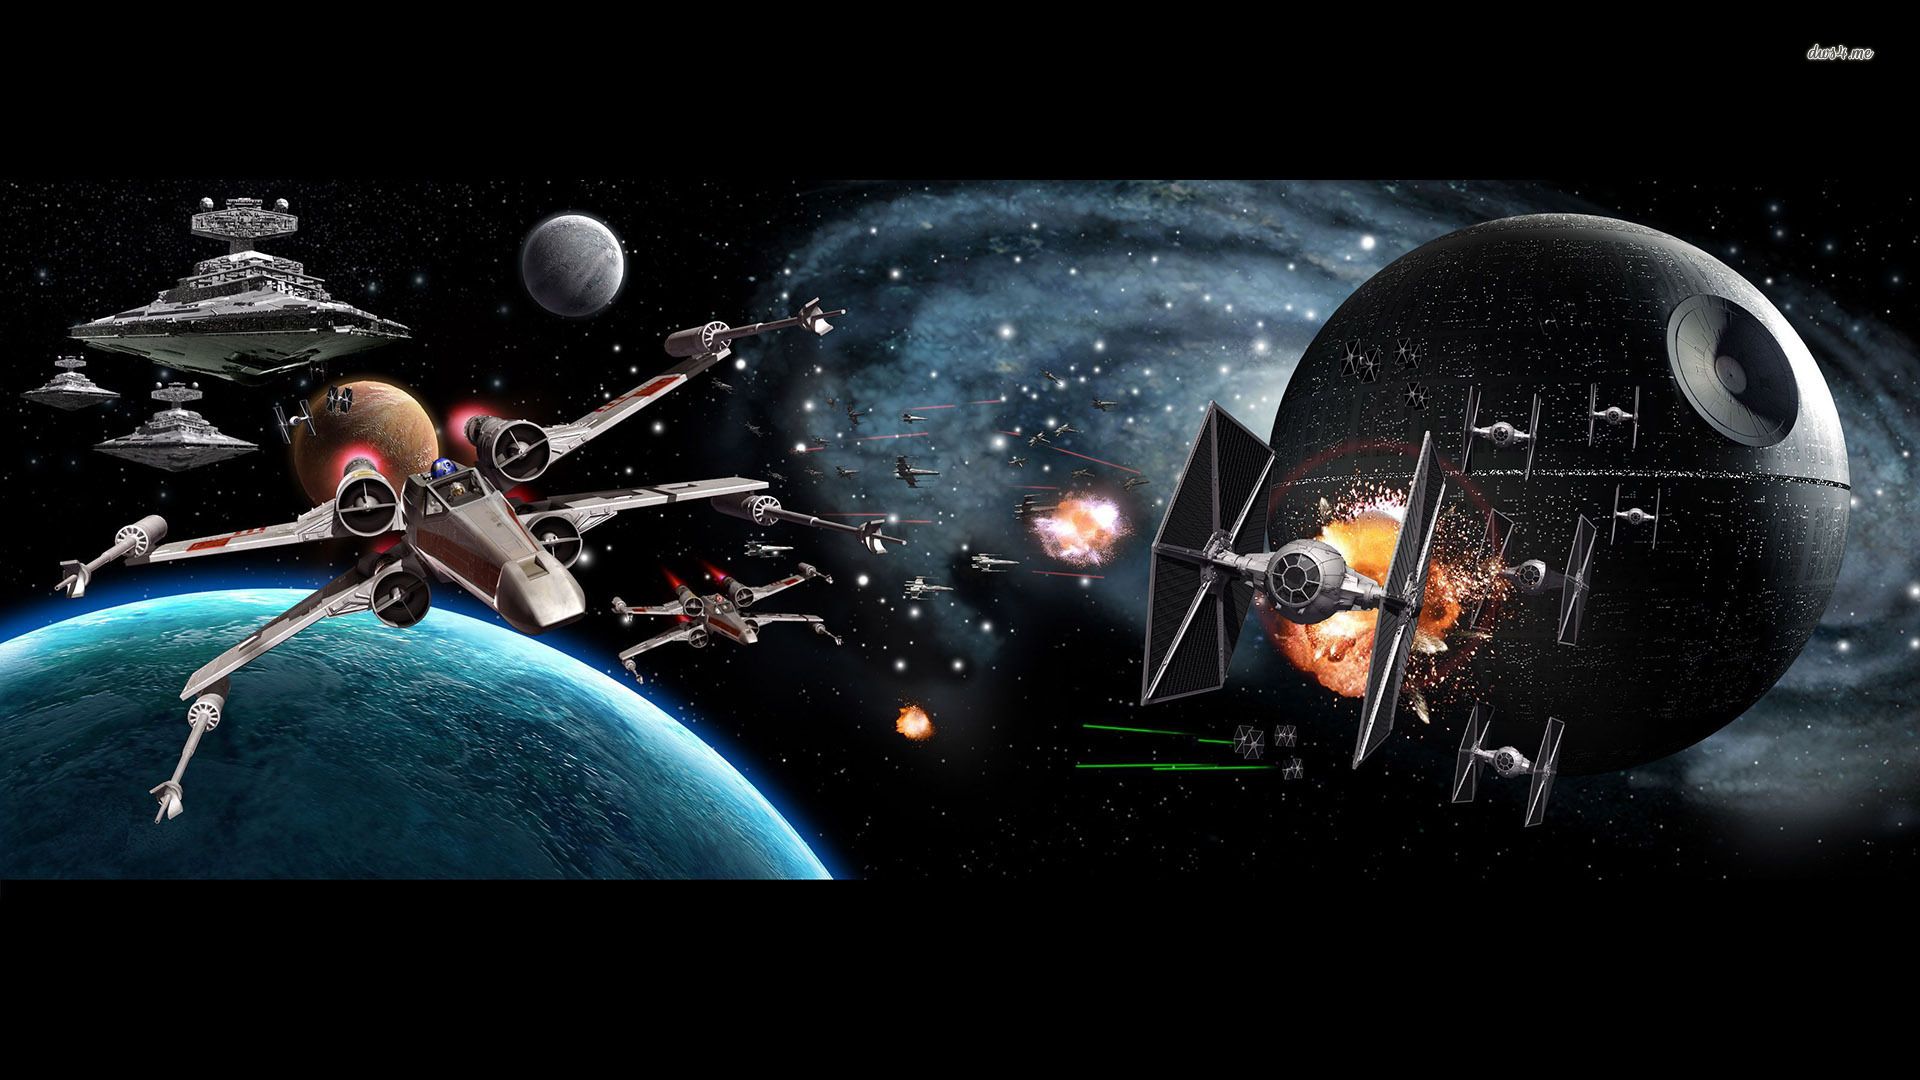 Starship Battles Wallpaper. Starship Wallpaper, Starship Enterprise Bridge Wallpaper and Star Wars Starship Wallpaper